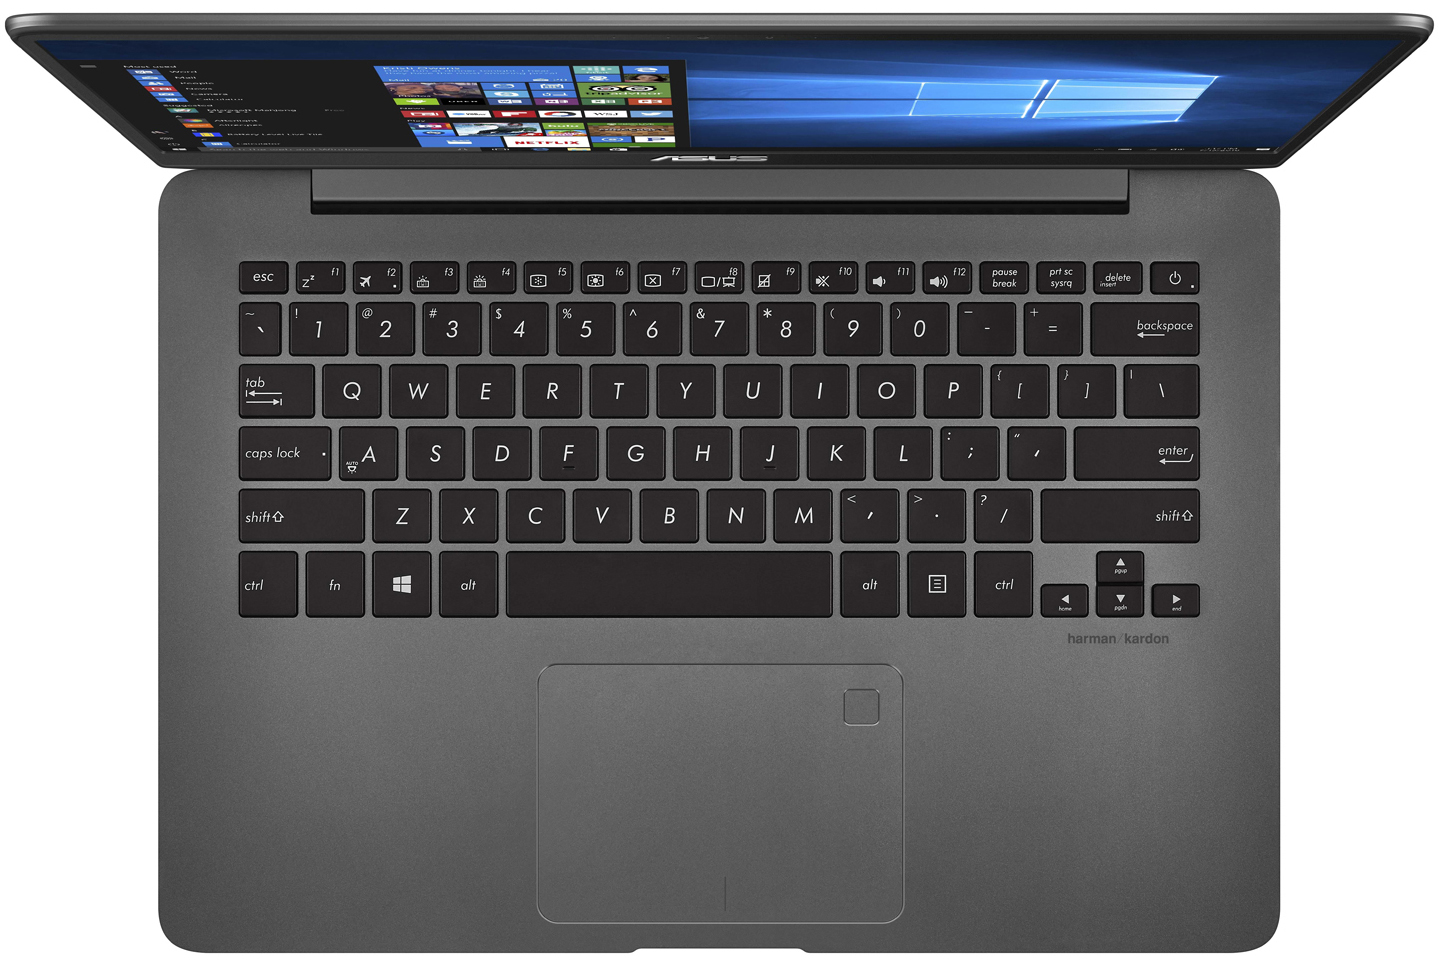 Купить Ноутбук ASUS ZenBook UX3430UQ (UX3430UQ-GV010T) Gray Metal - ITMag